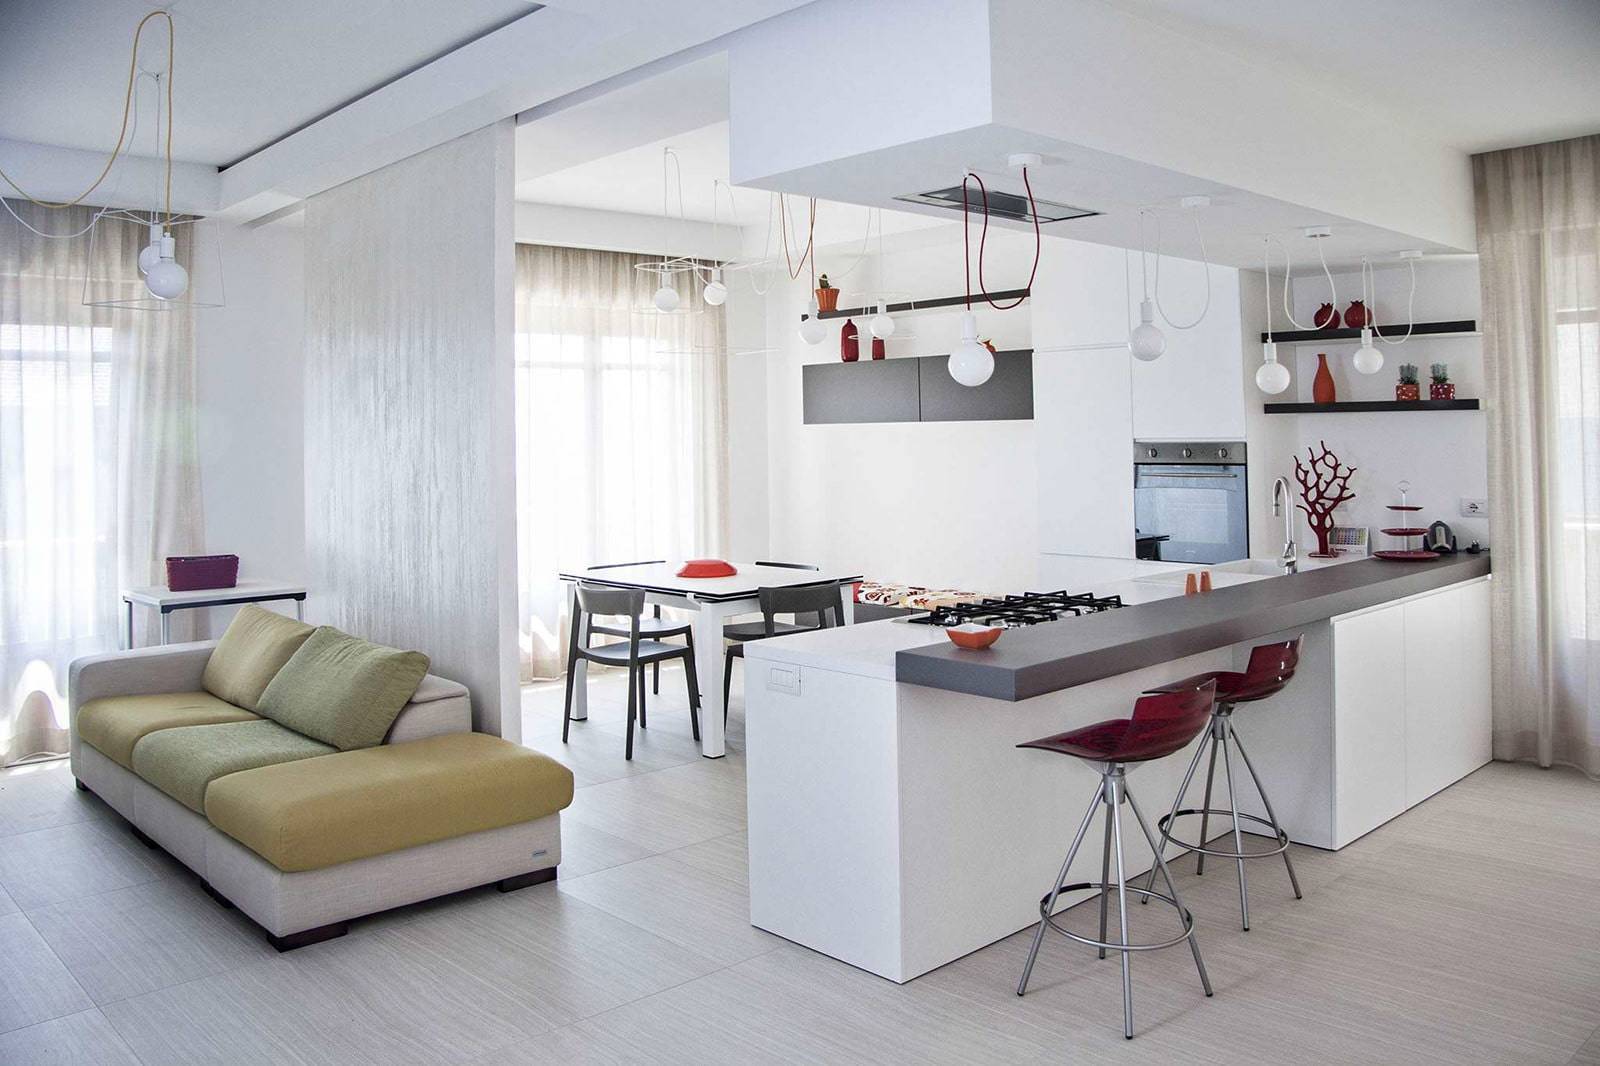 Кухня в квартире-студии: 5 важных моментов планировки и дизайна интерьера